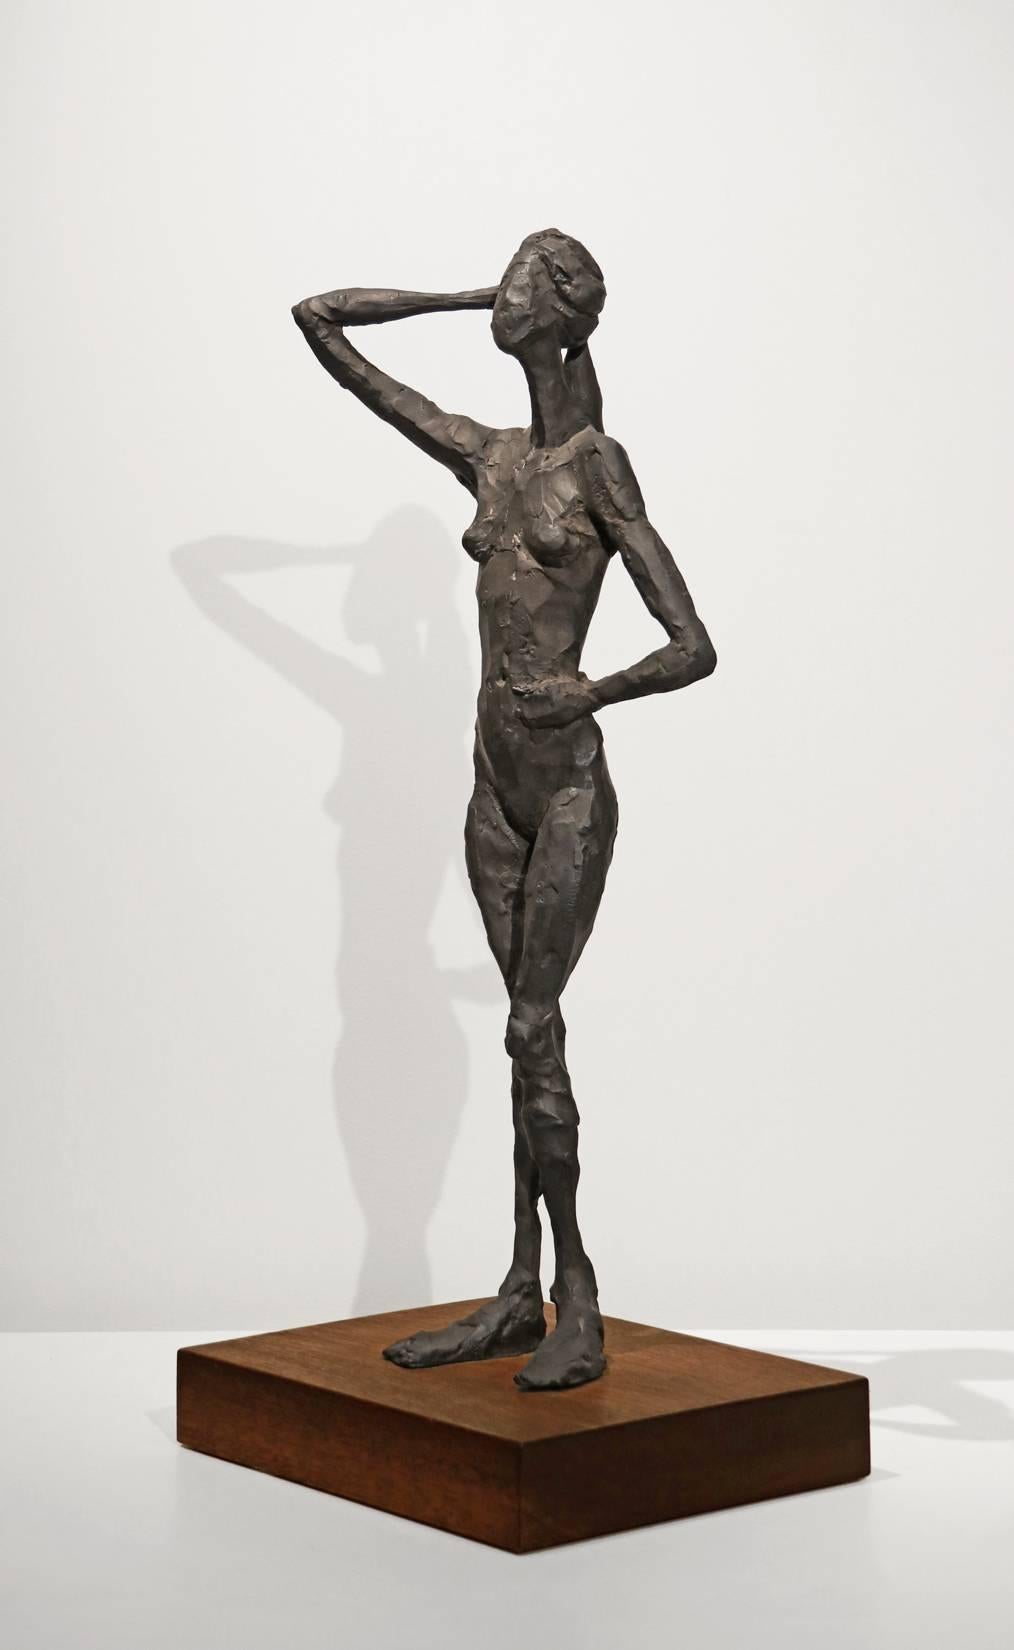 Pamela debout - Sculpture de Curt Brill